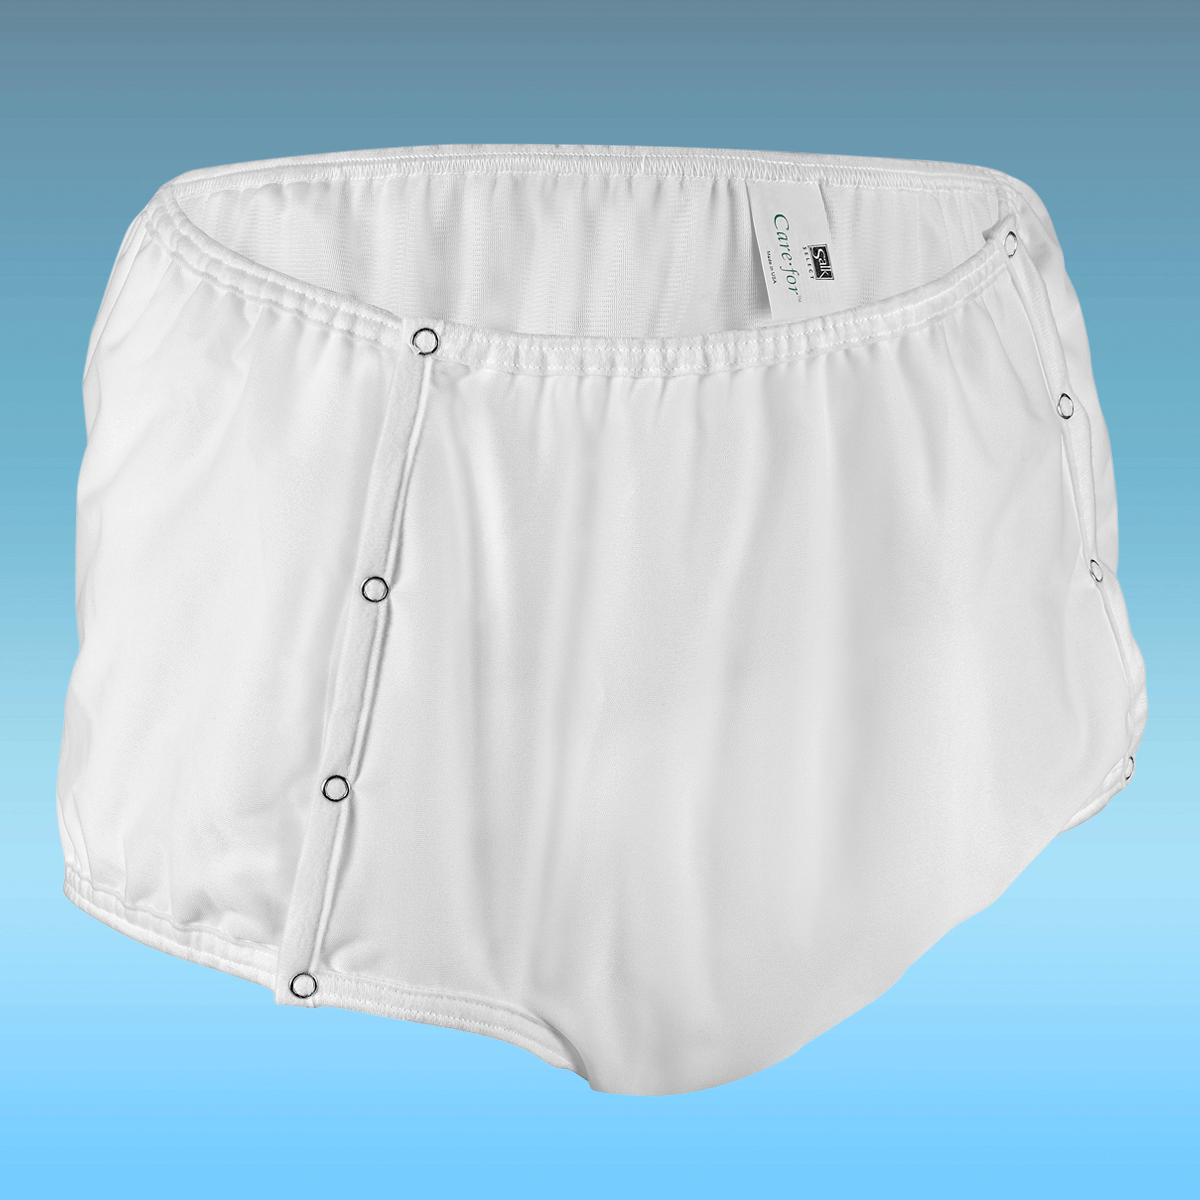  Kleinert's Men's Safe & Dry Incontinence Underwear for